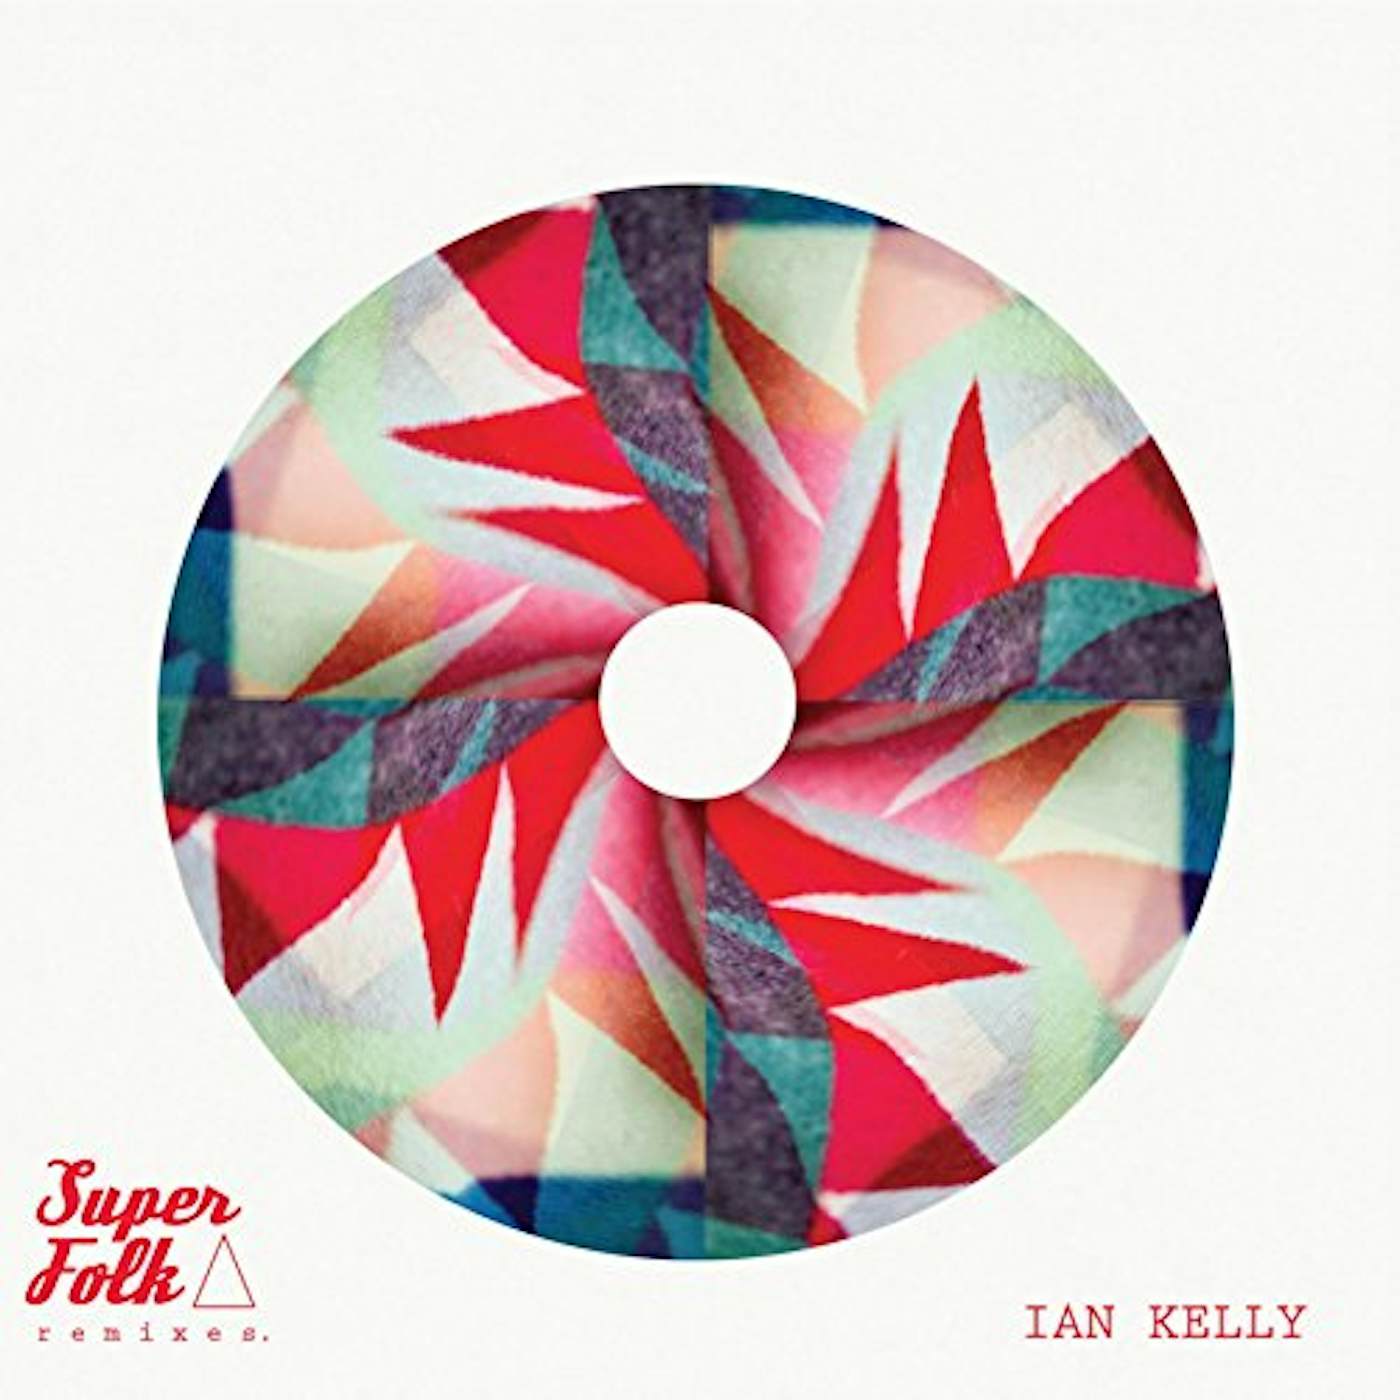 Ian Kelly SUPERFOLK REMIXES CD